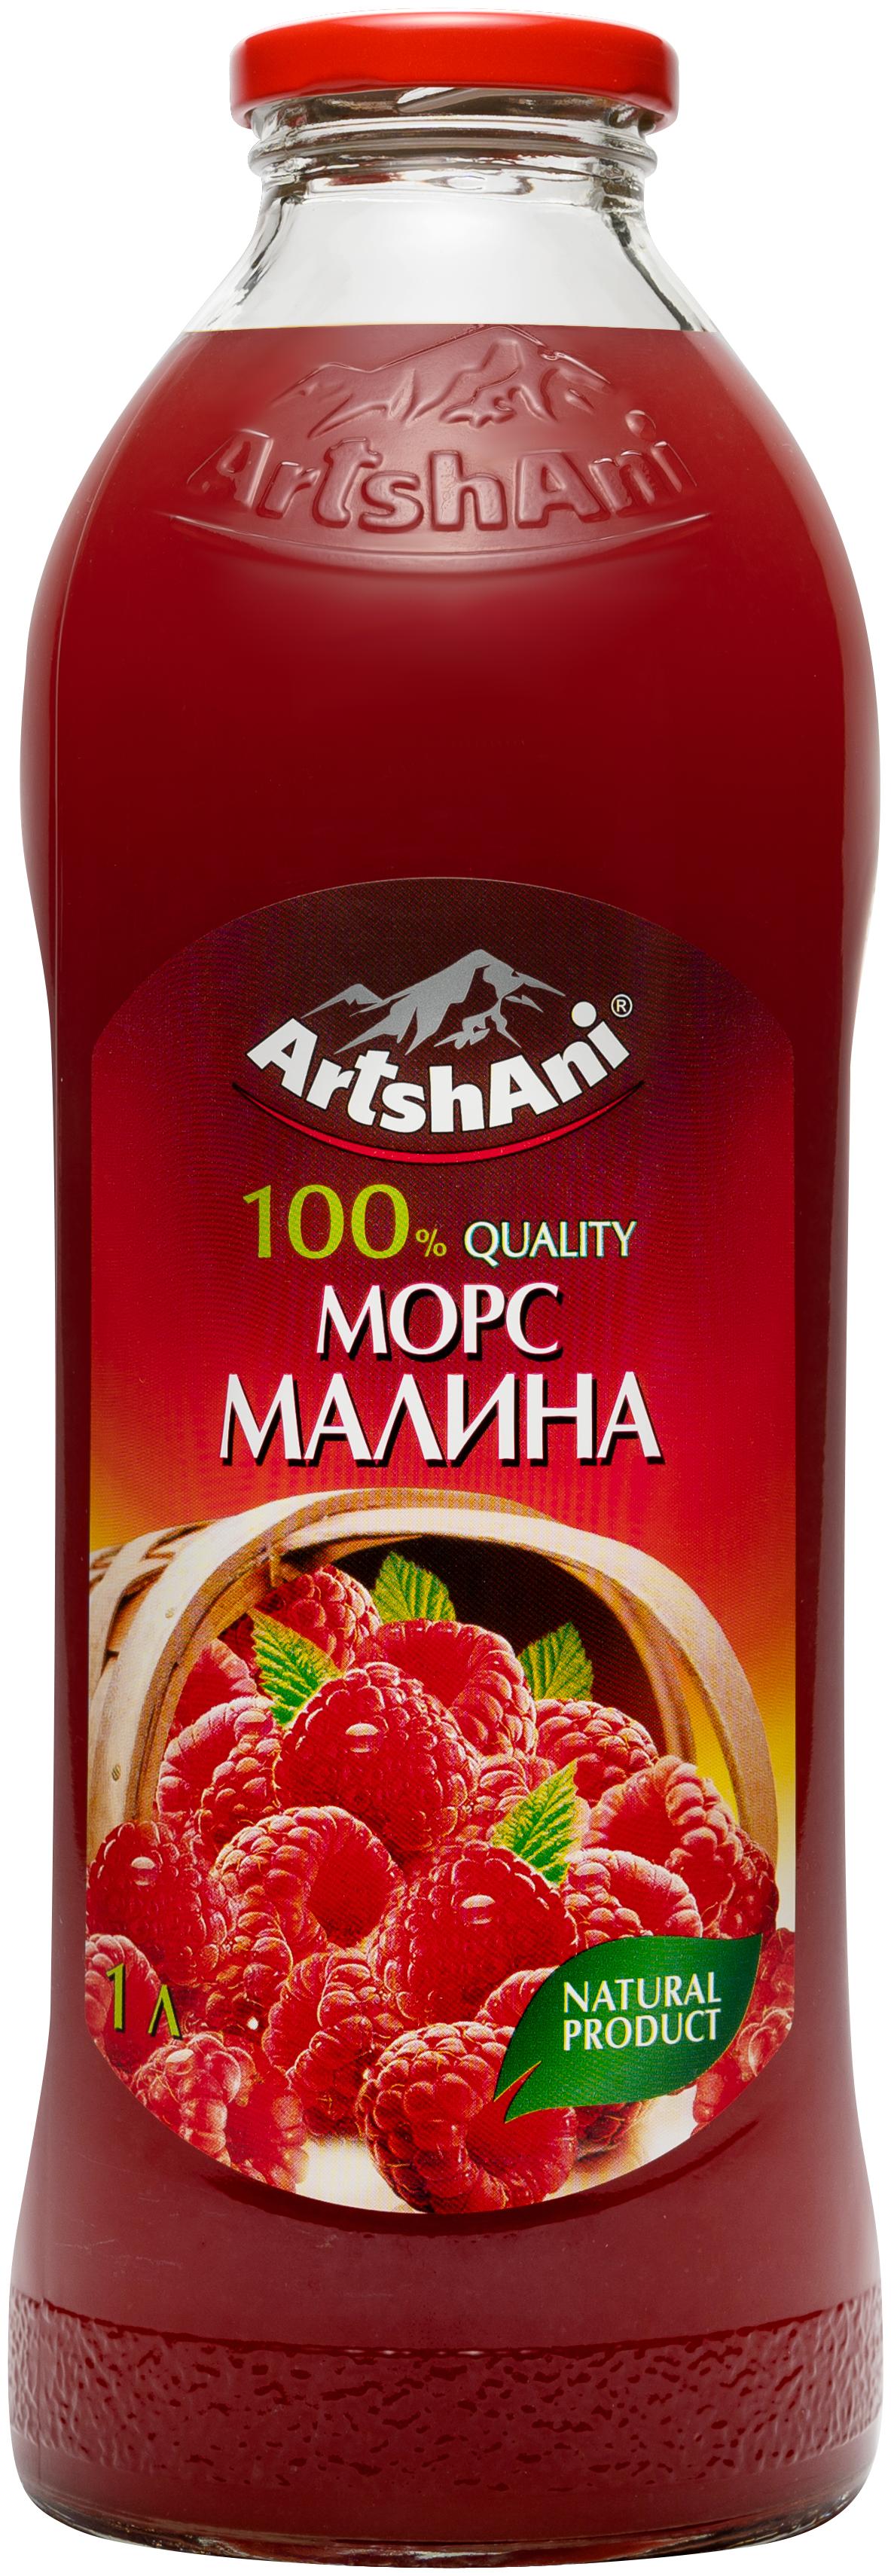 Морс Artshani малина 1 л., стекло